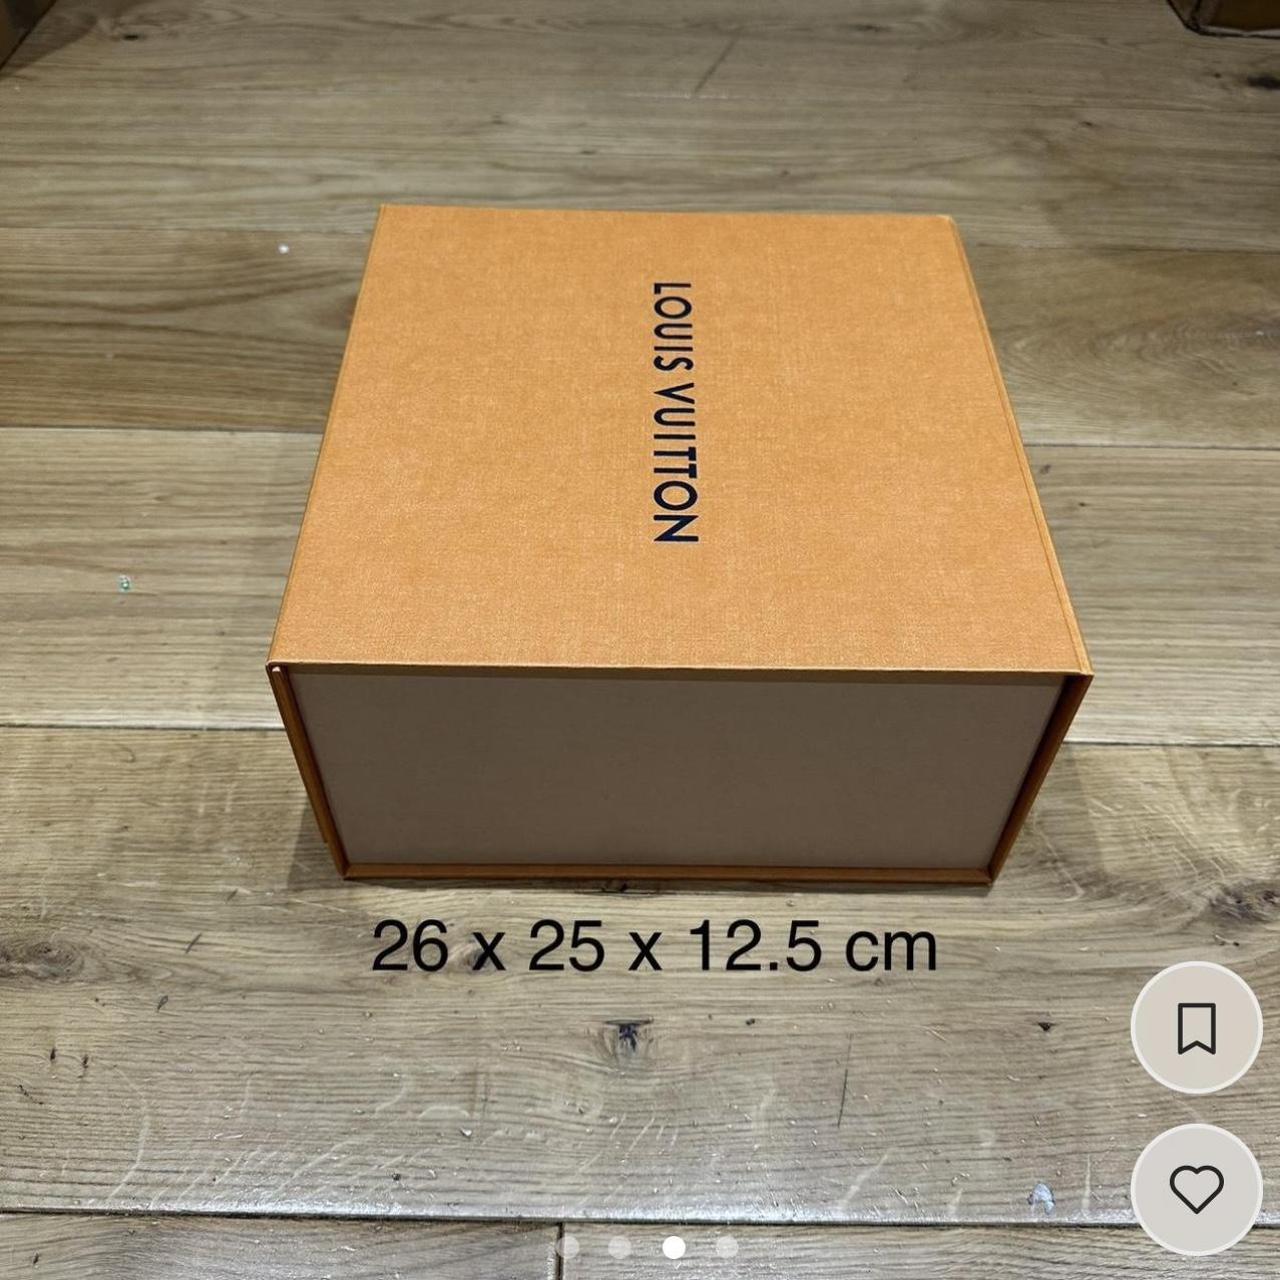 Authentic Magnetic Louis Vuitton 18x 14.4 x 6.5 inch - Depop